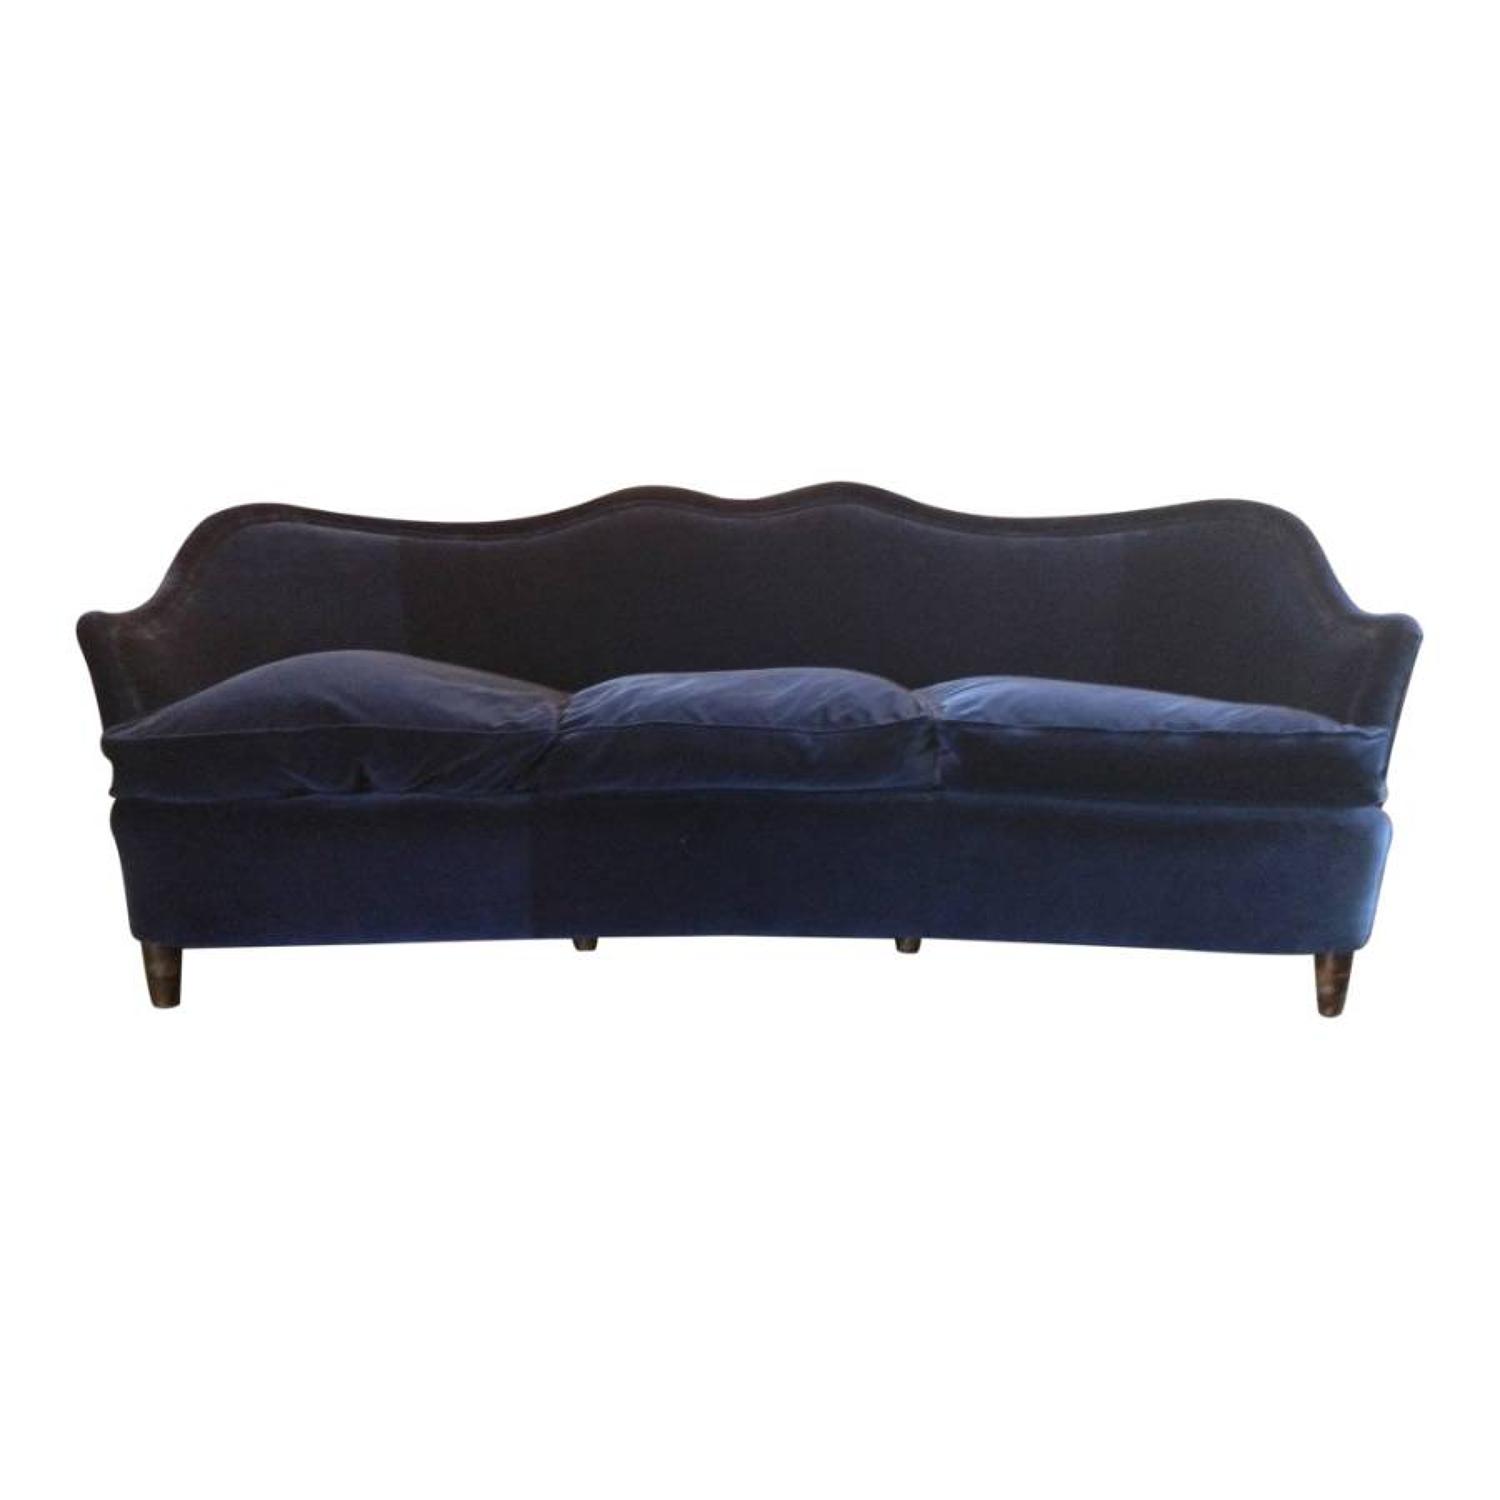 1940s Italian sofa in blue velvet